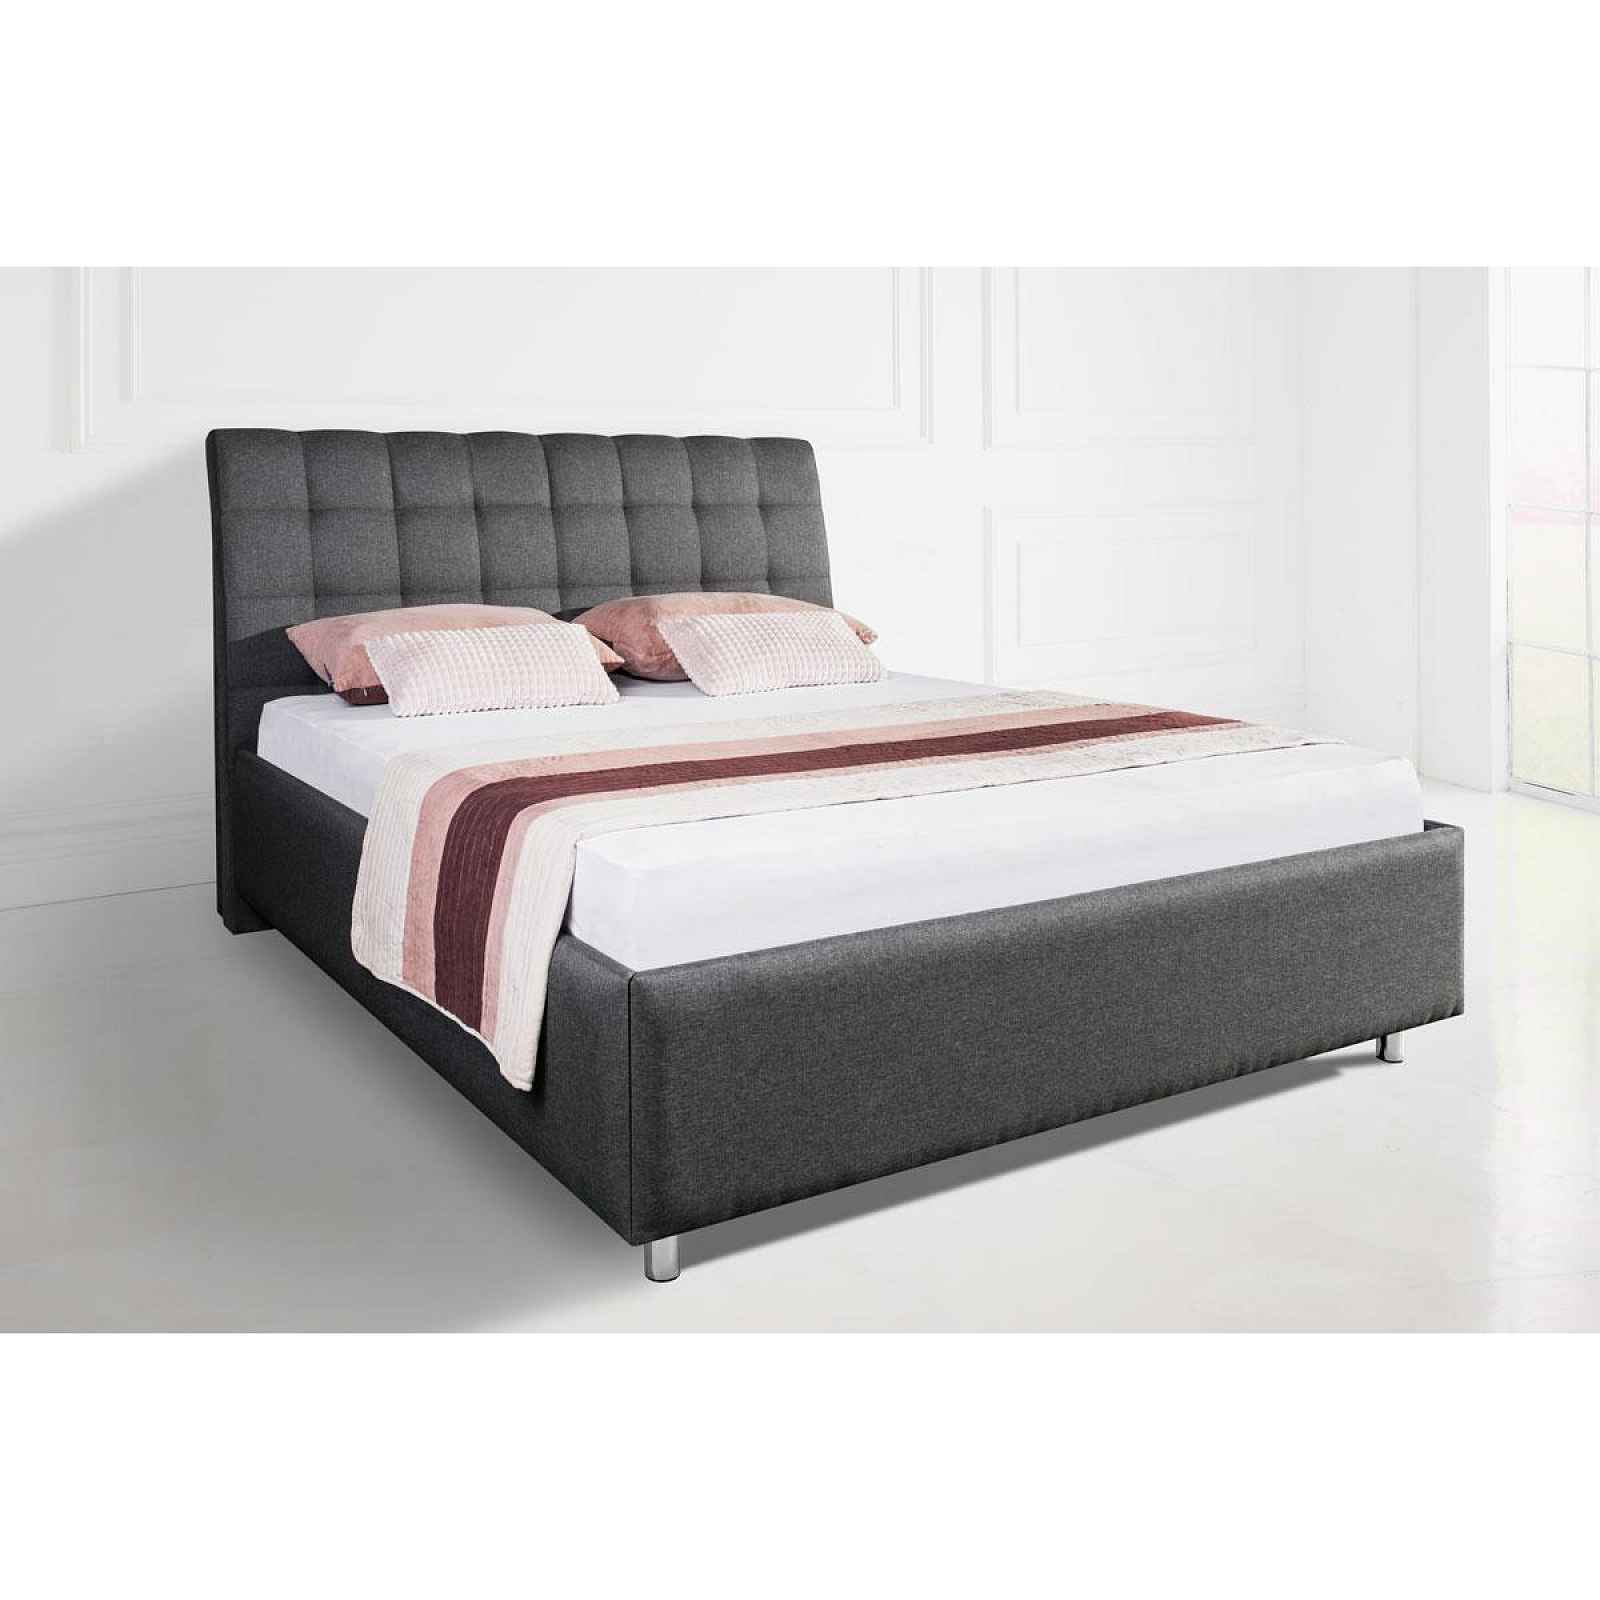 Nadčasová čalouněná postel Nashville Frame do každé ložnice v barvě Savana grey 140x200 cm